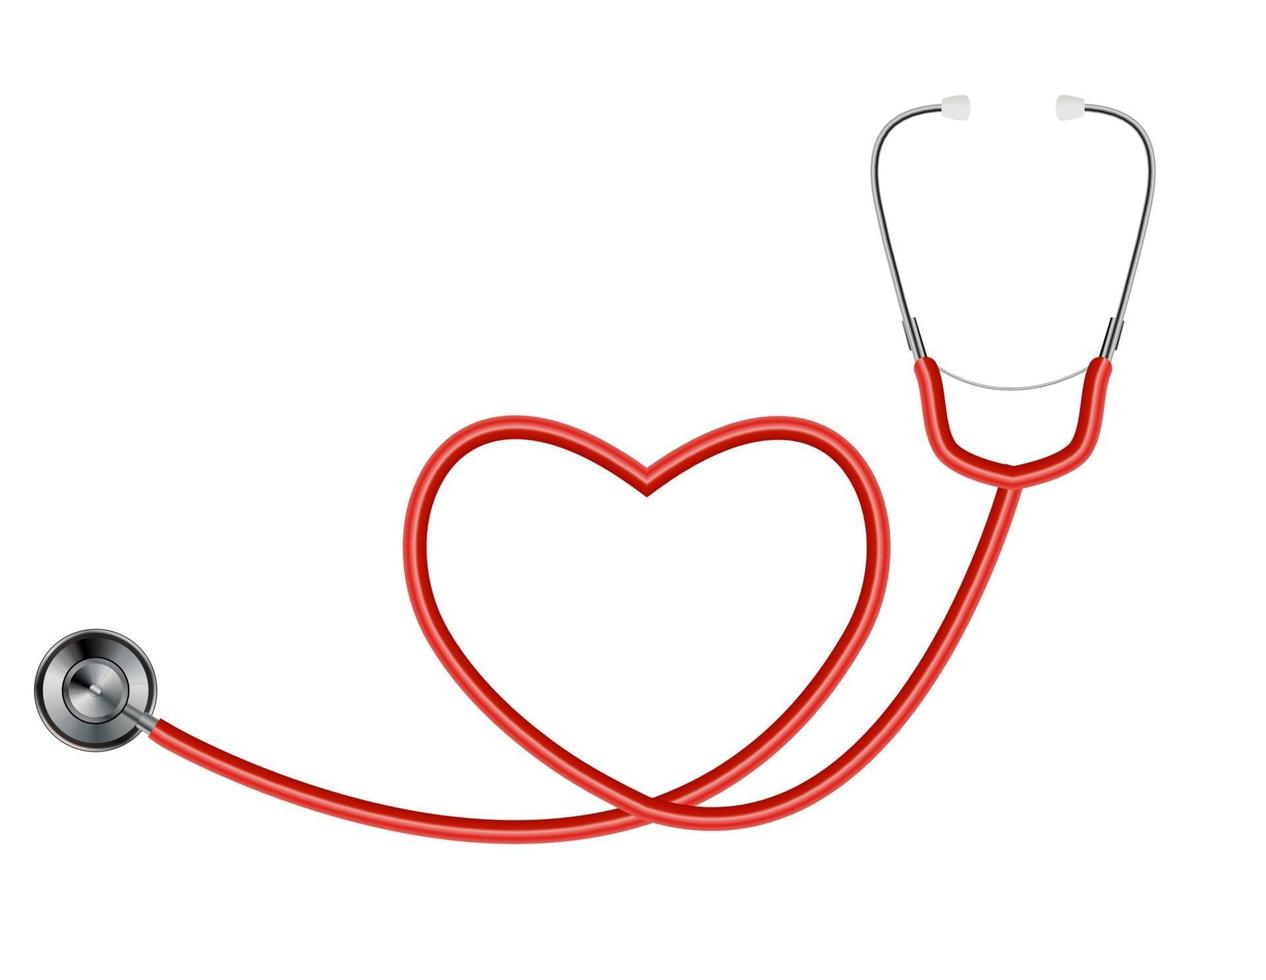 medicinskt verktygsstetoskop isolerad på vit bakgrund med hjärtsymbol. vektor illustration